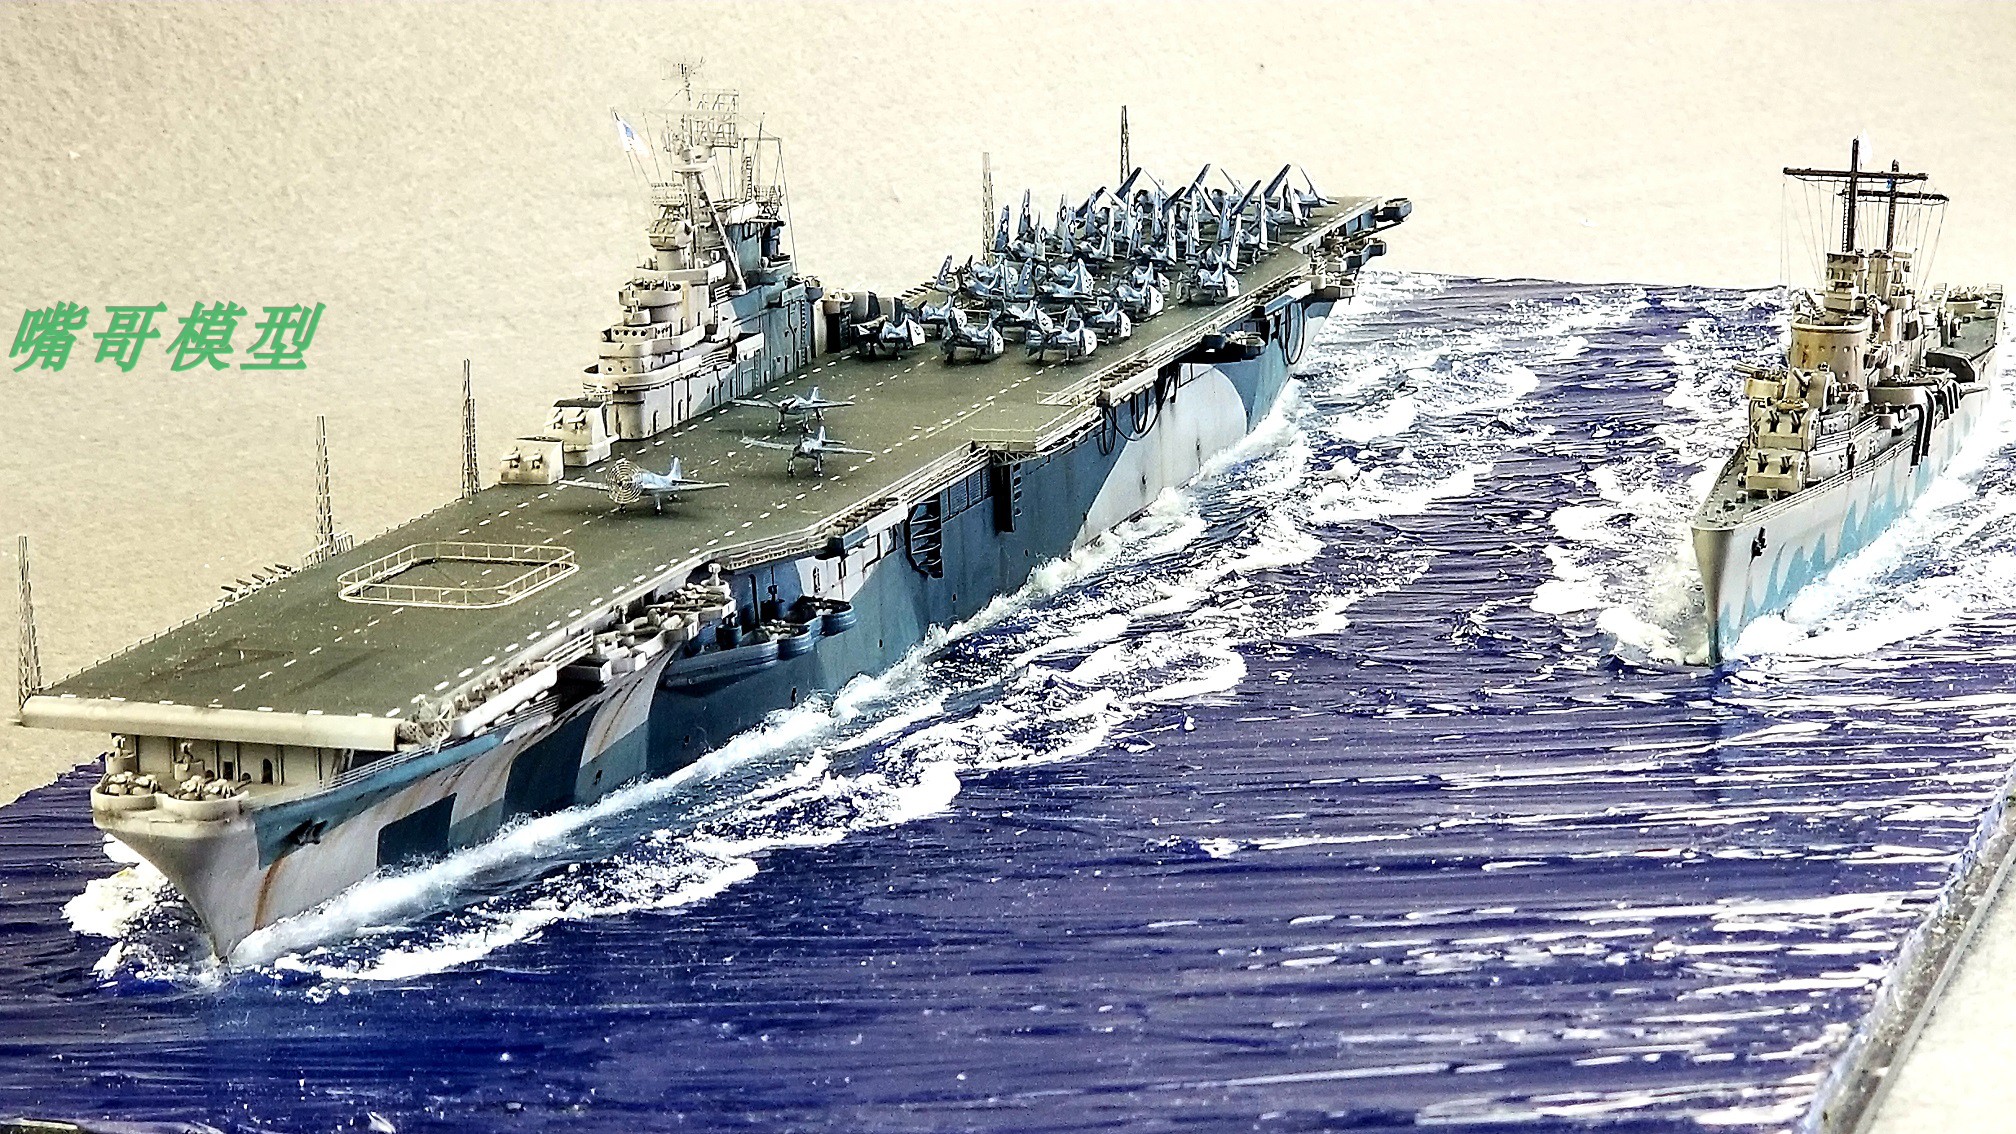 高仿真舰船模型 美国海军埃塞克斯级航母编队 手工制战舰世界航母